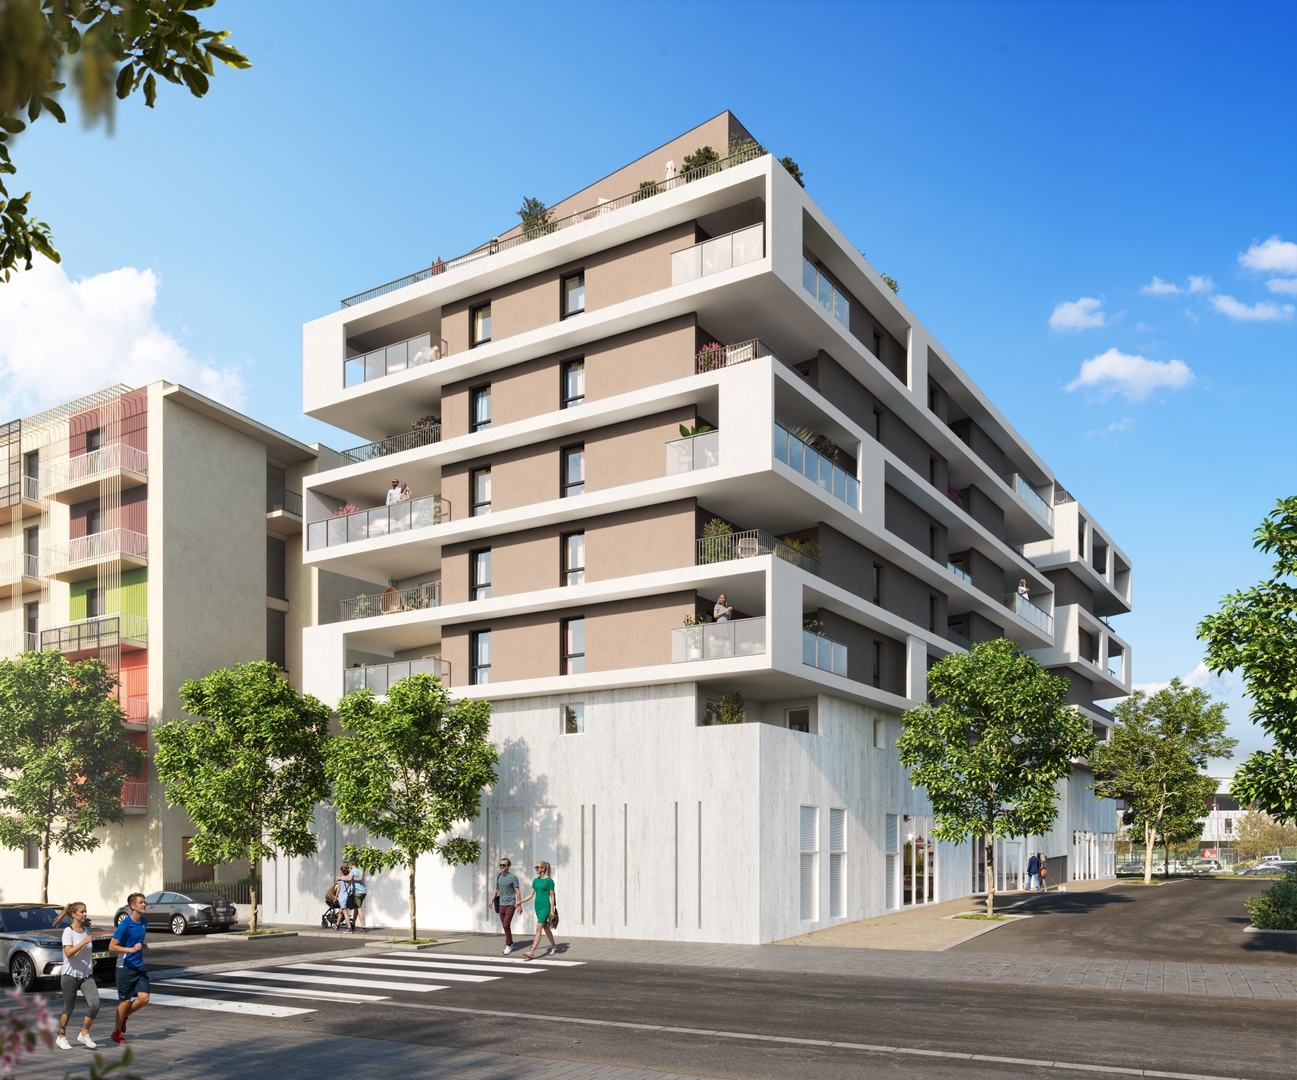 Programme Immobilier neuf NUANS à Montpellier (34)